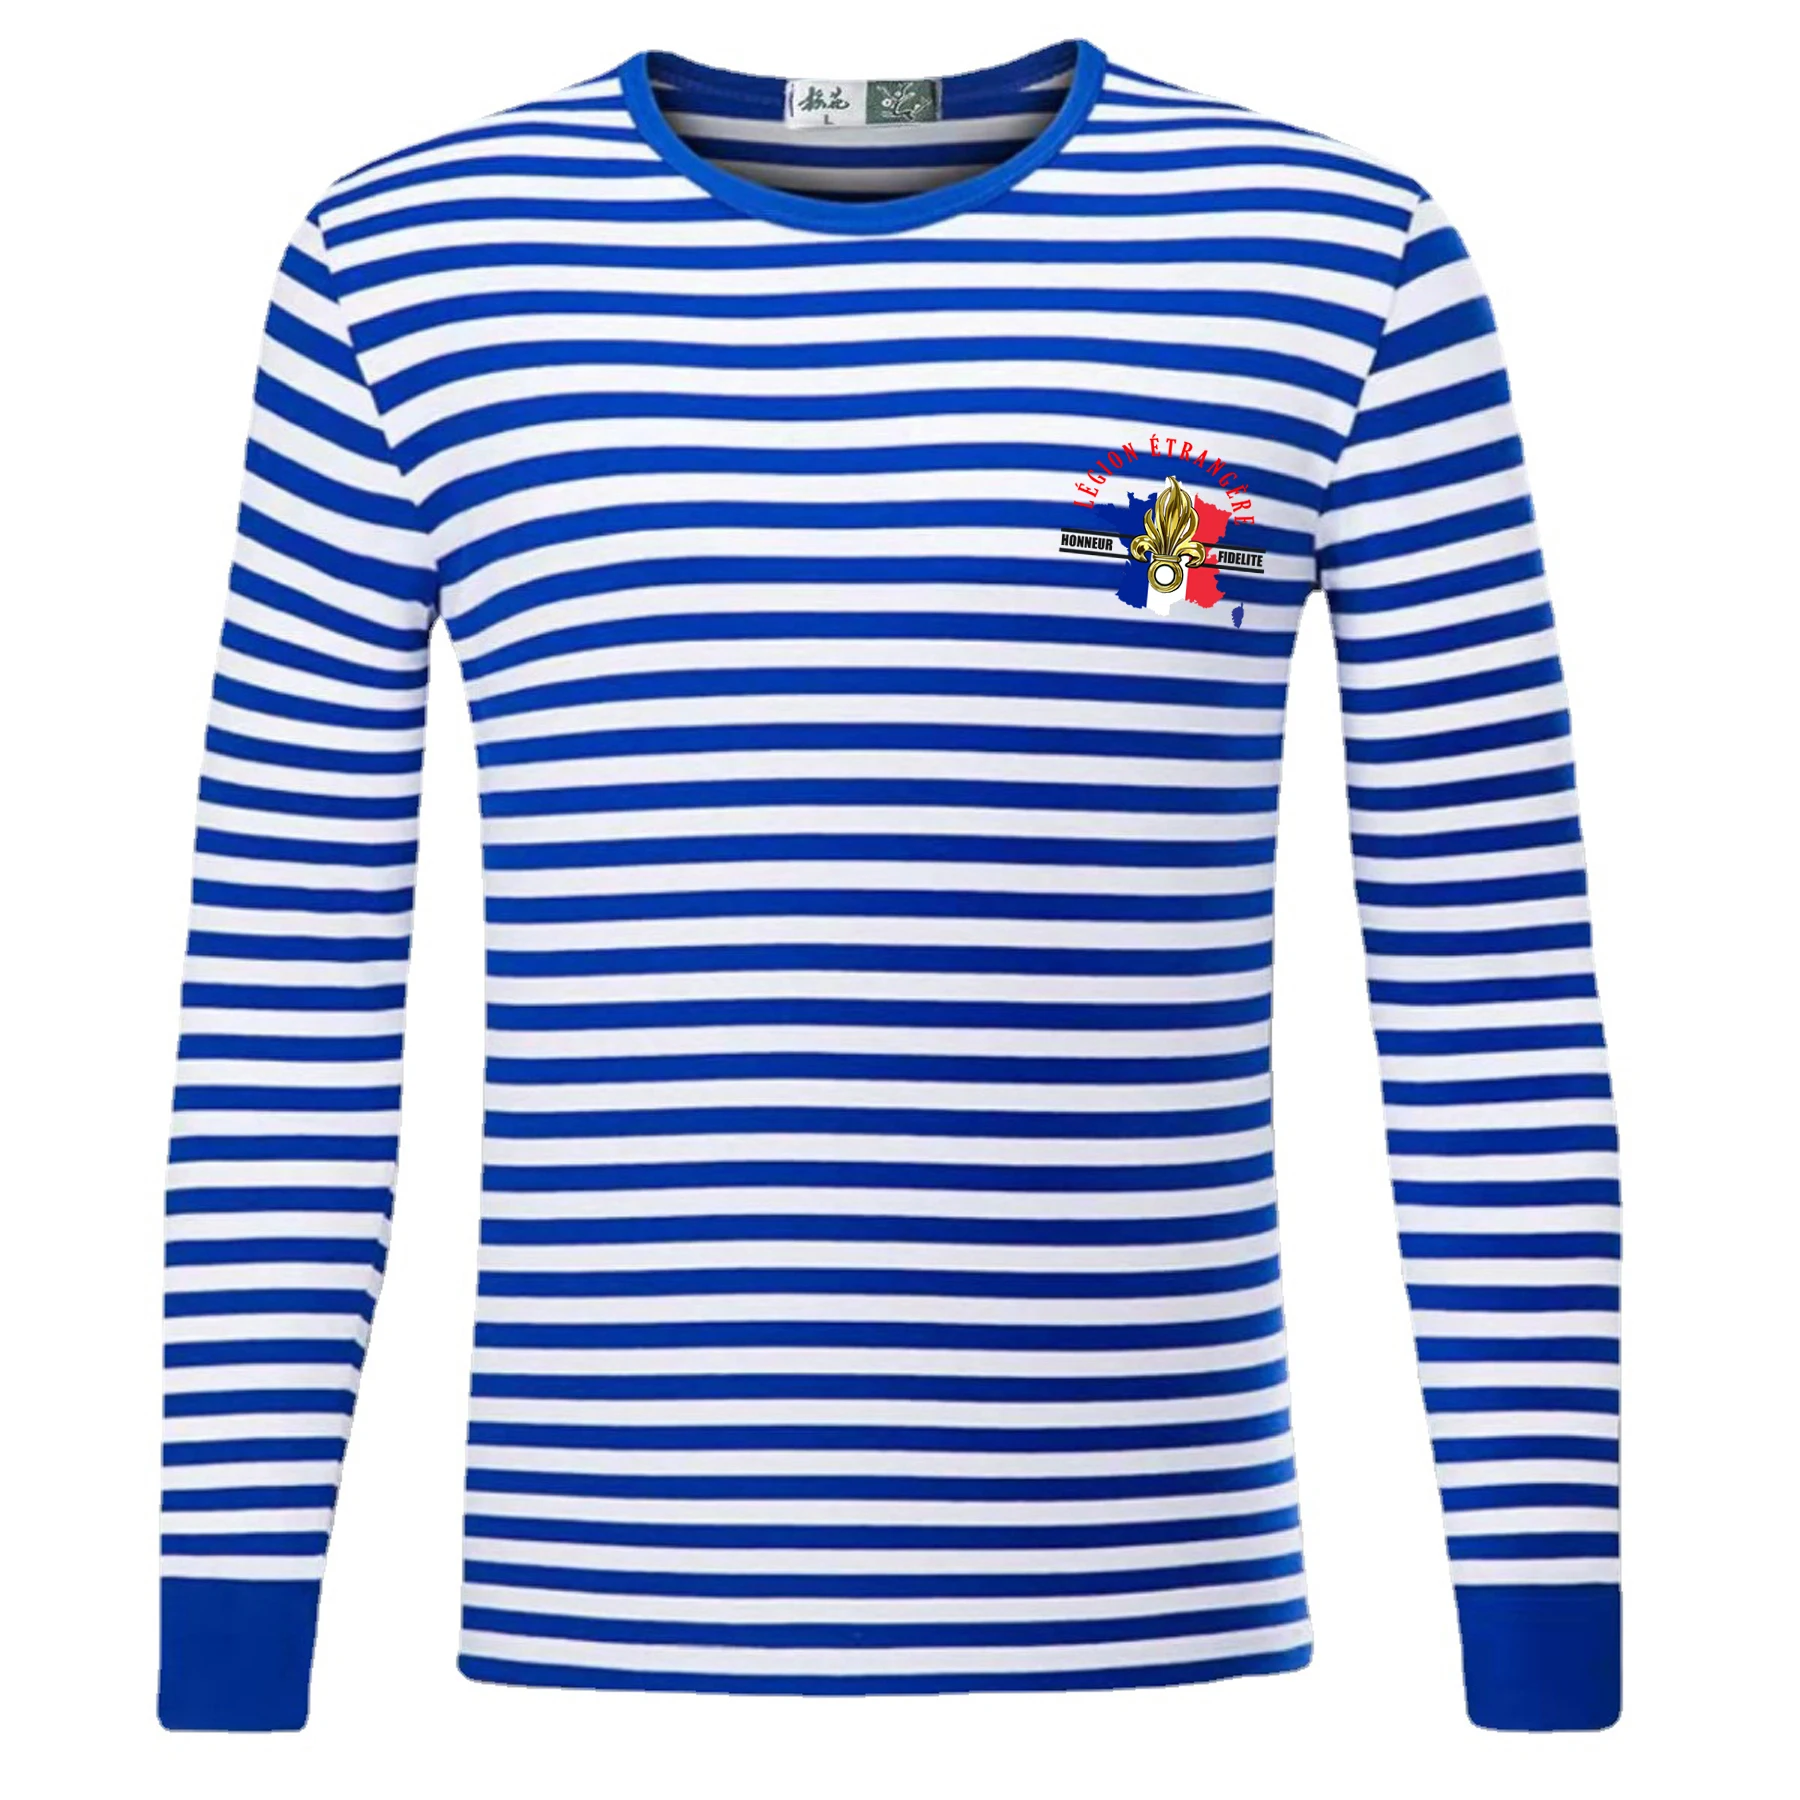 

Legion Etrangère. Honneur Fidelité. Frence Foreign Legion Sailor's Striped Shirt 100% Cotton Long Sleeve Mens T-Shirt Breton Top